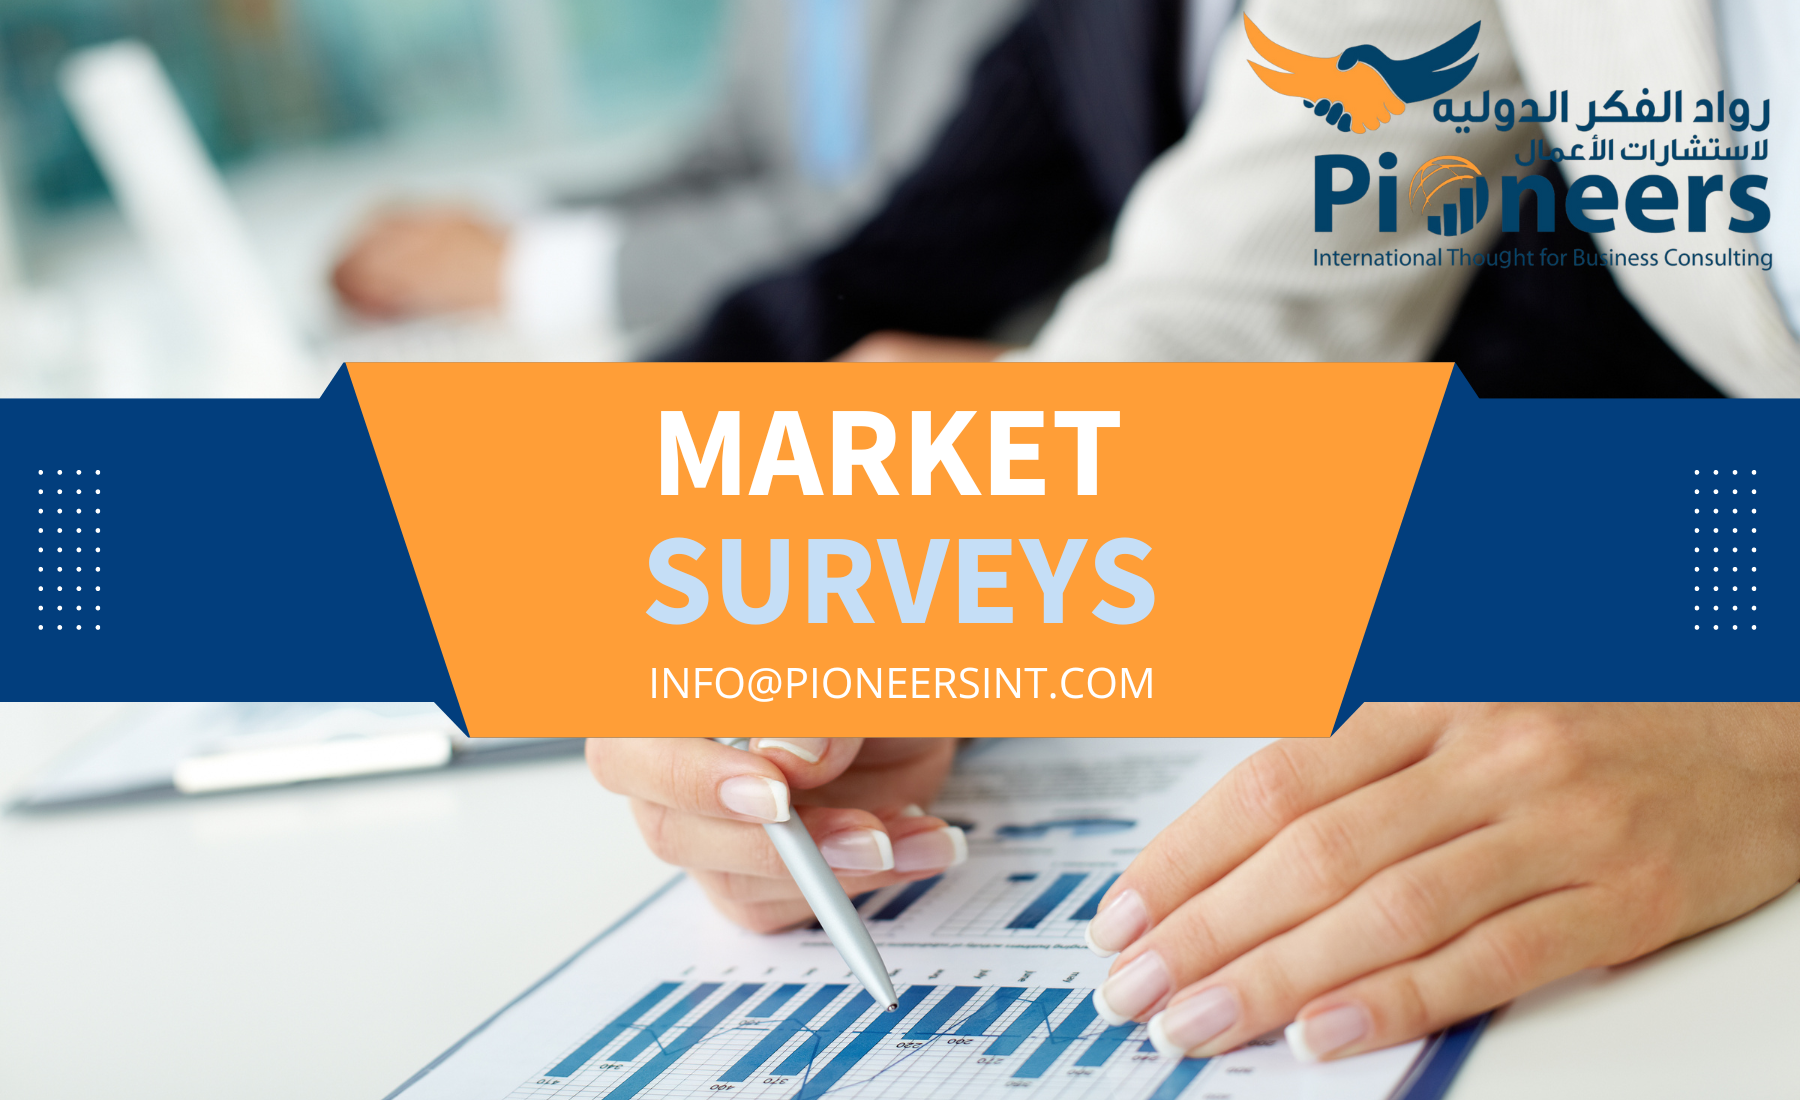 Market surveys